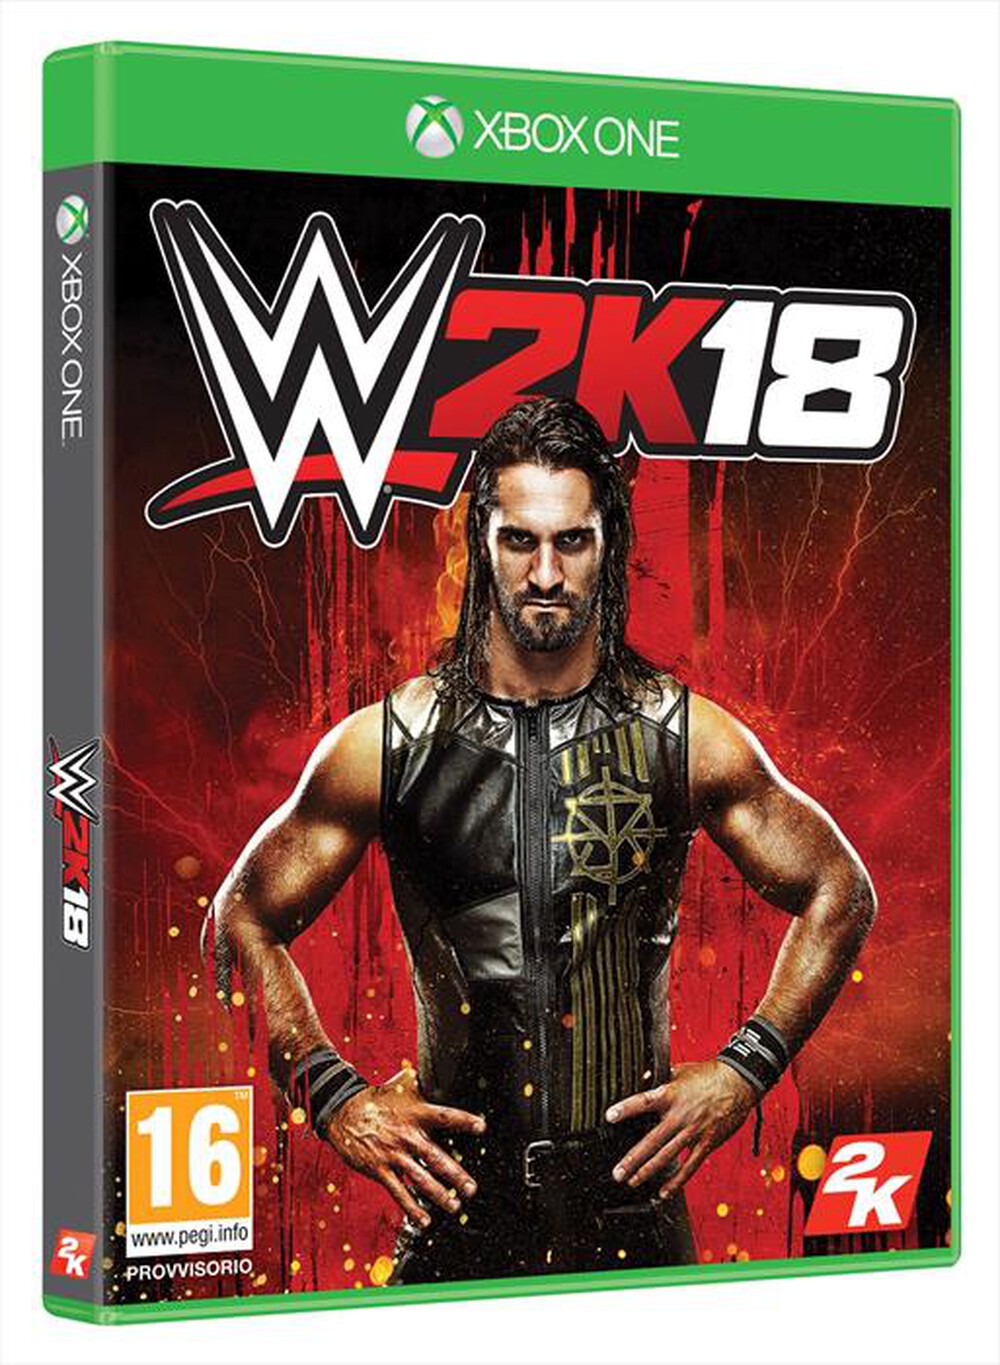 "TAKE TWO - WWE 2K18 Xbox One"